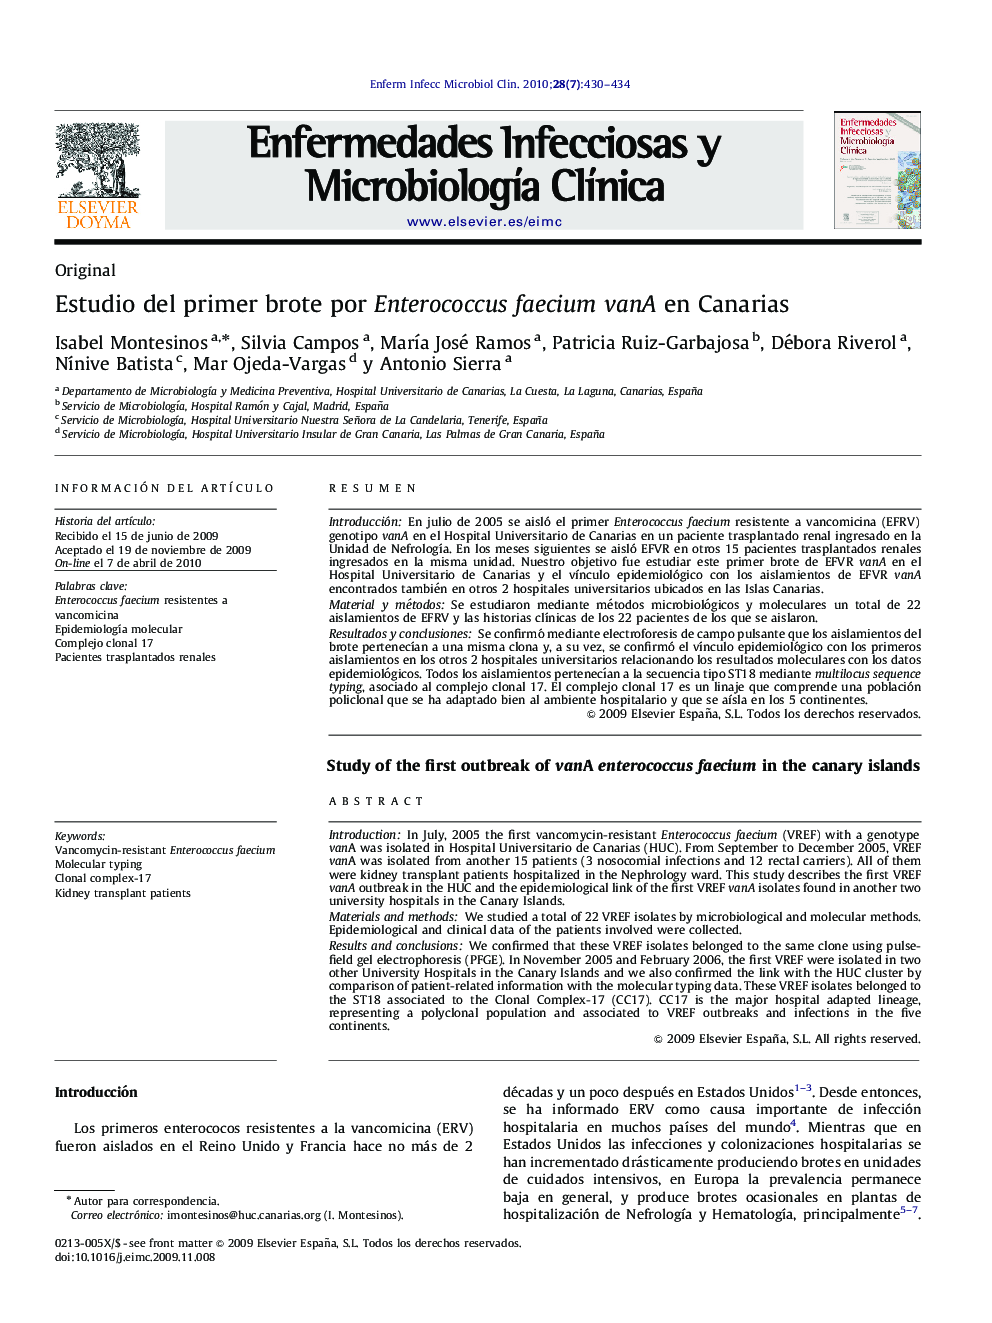 Estudio del primer brote por Enterococcus faecium vanA en Canarias